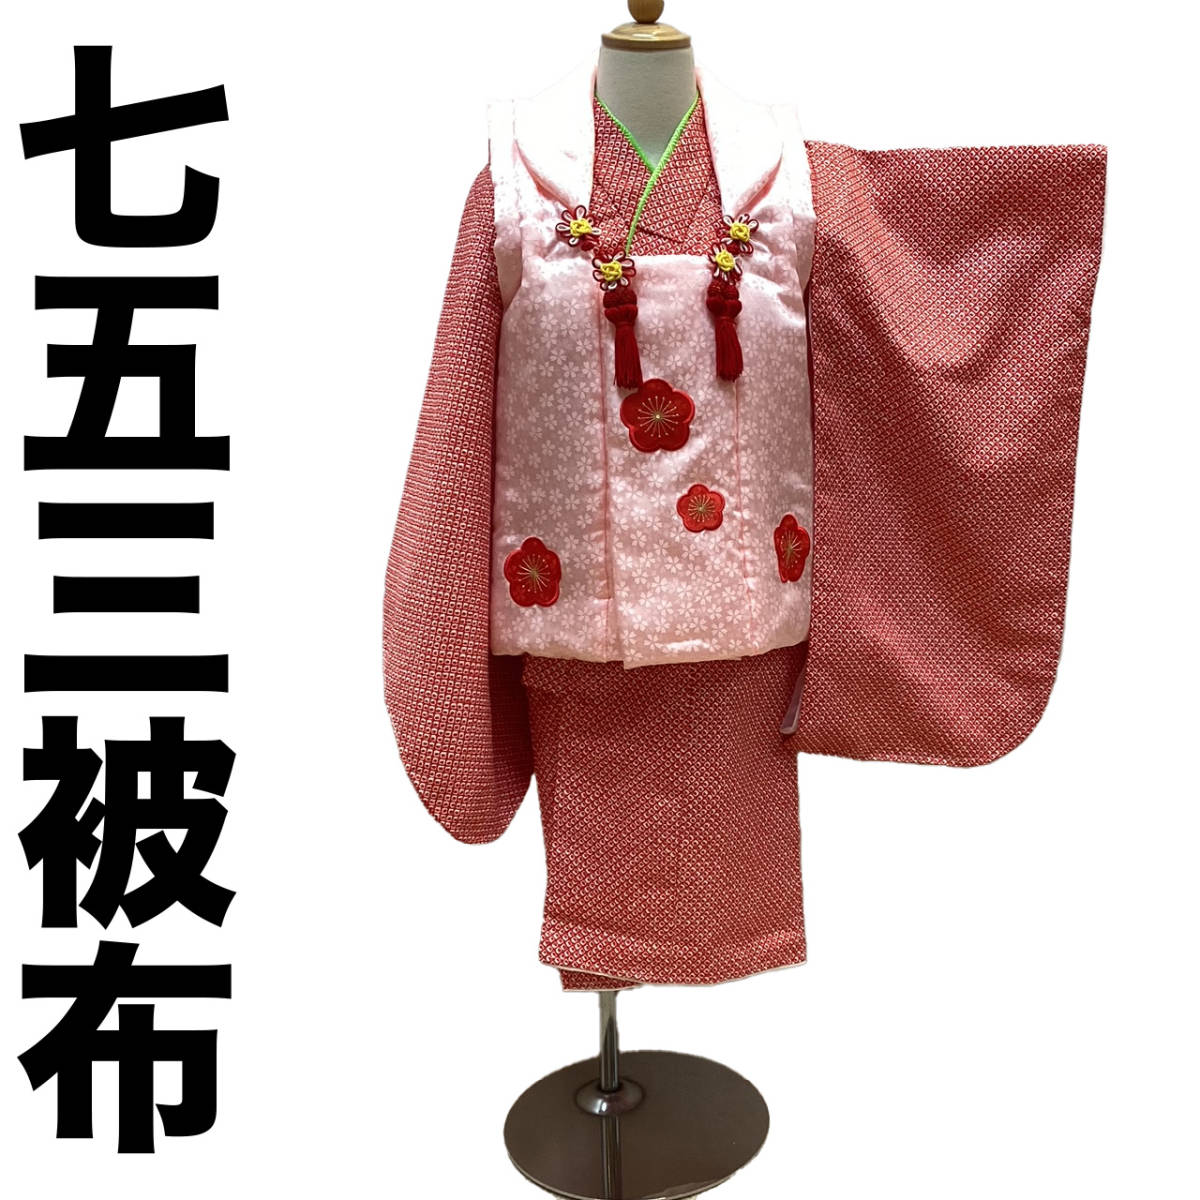  "Семь, пять, три" кимоно 3 лет mi509t. ткань пальто вышивка рисунок розовый земля новый товар включая доставку 